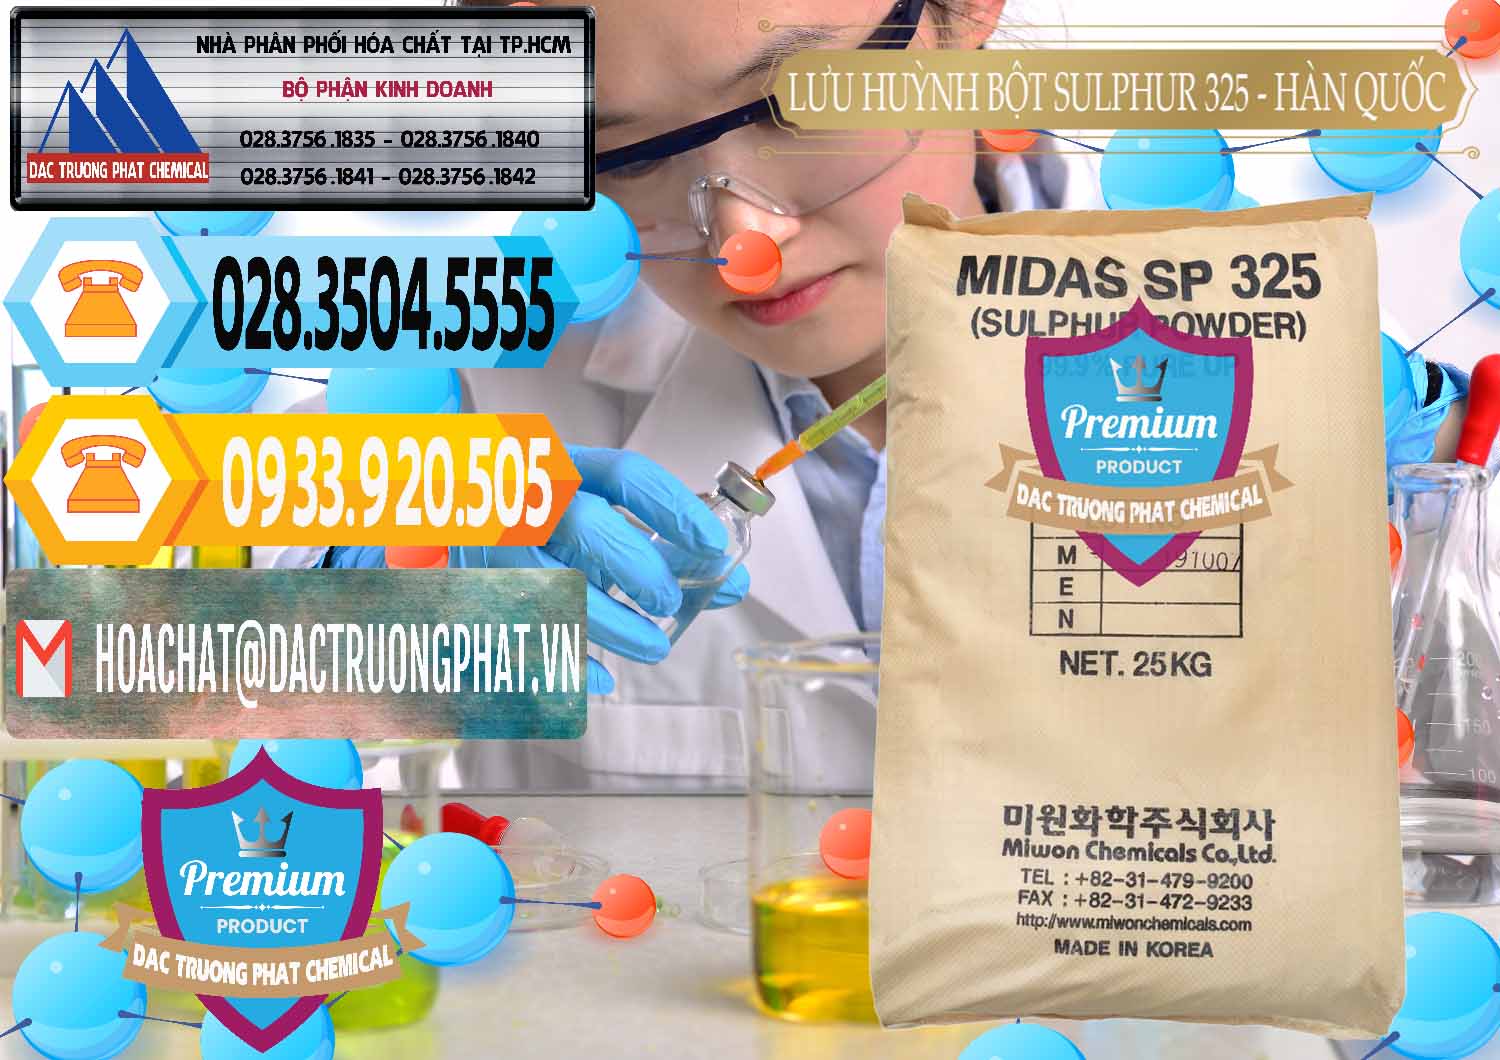 Bán & phân phối Lưu huỳnh Bột - Sulfur Powder Midas SP 325 Hàn Quốc Korea - 0198 - Nơi chuyên cung cấp - kinh doanh hóa chất tại TP.HCM - hoachattayrua.net